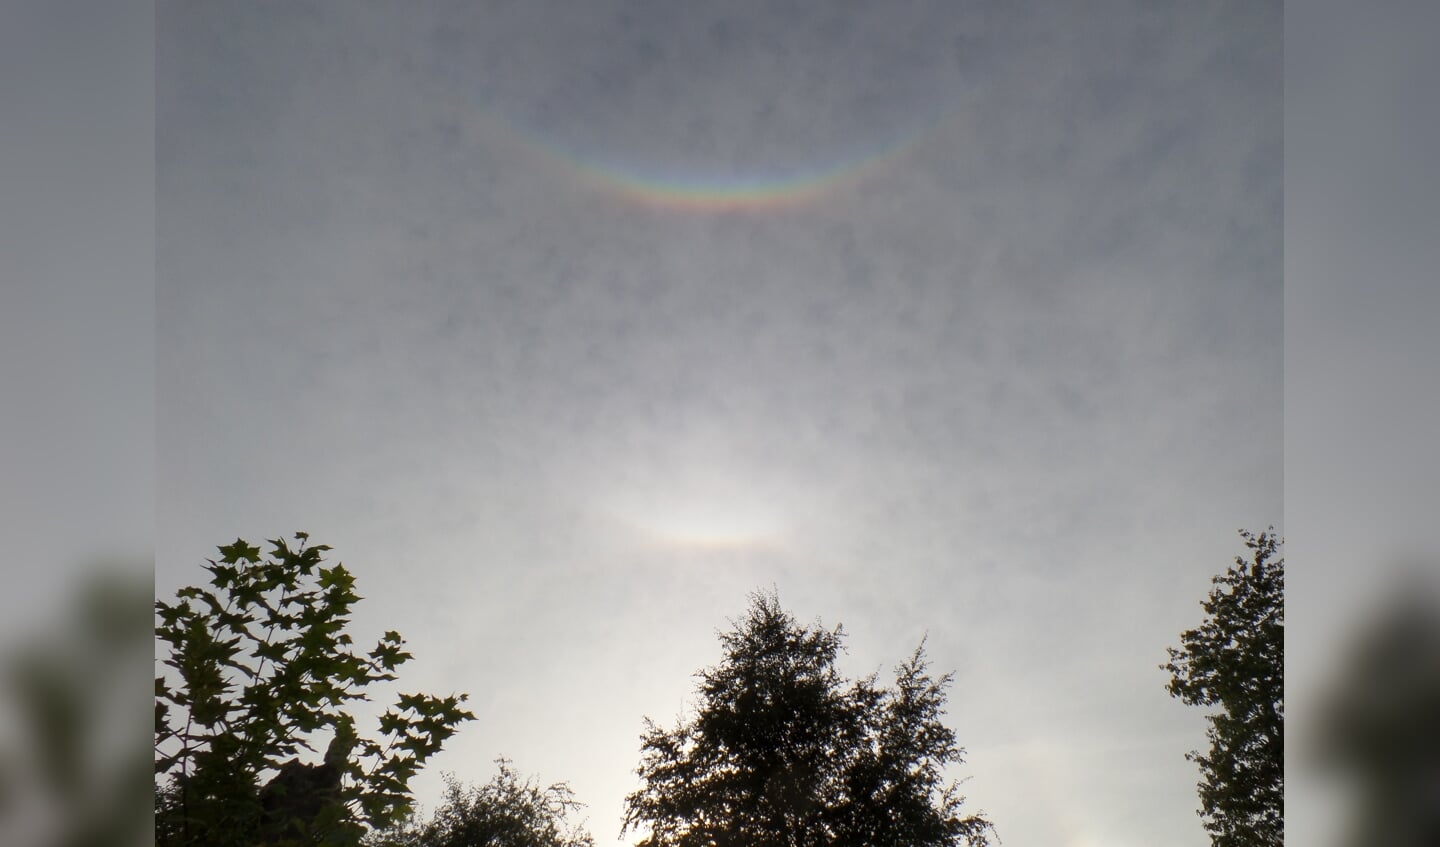 'Een omgekeerde (dubbele) regenboog gefotografeerd op 30 augustus om 18.20 uur in onze tuin in Stoutenburg. Het natuurverschijnsel wordt circumzenitale boog genoemd en ontstaat hoog in de lucht in dunne bewolking in combinatie met een bepaalde stand van de zon. Ik had het nog nooit eerder gezien.'